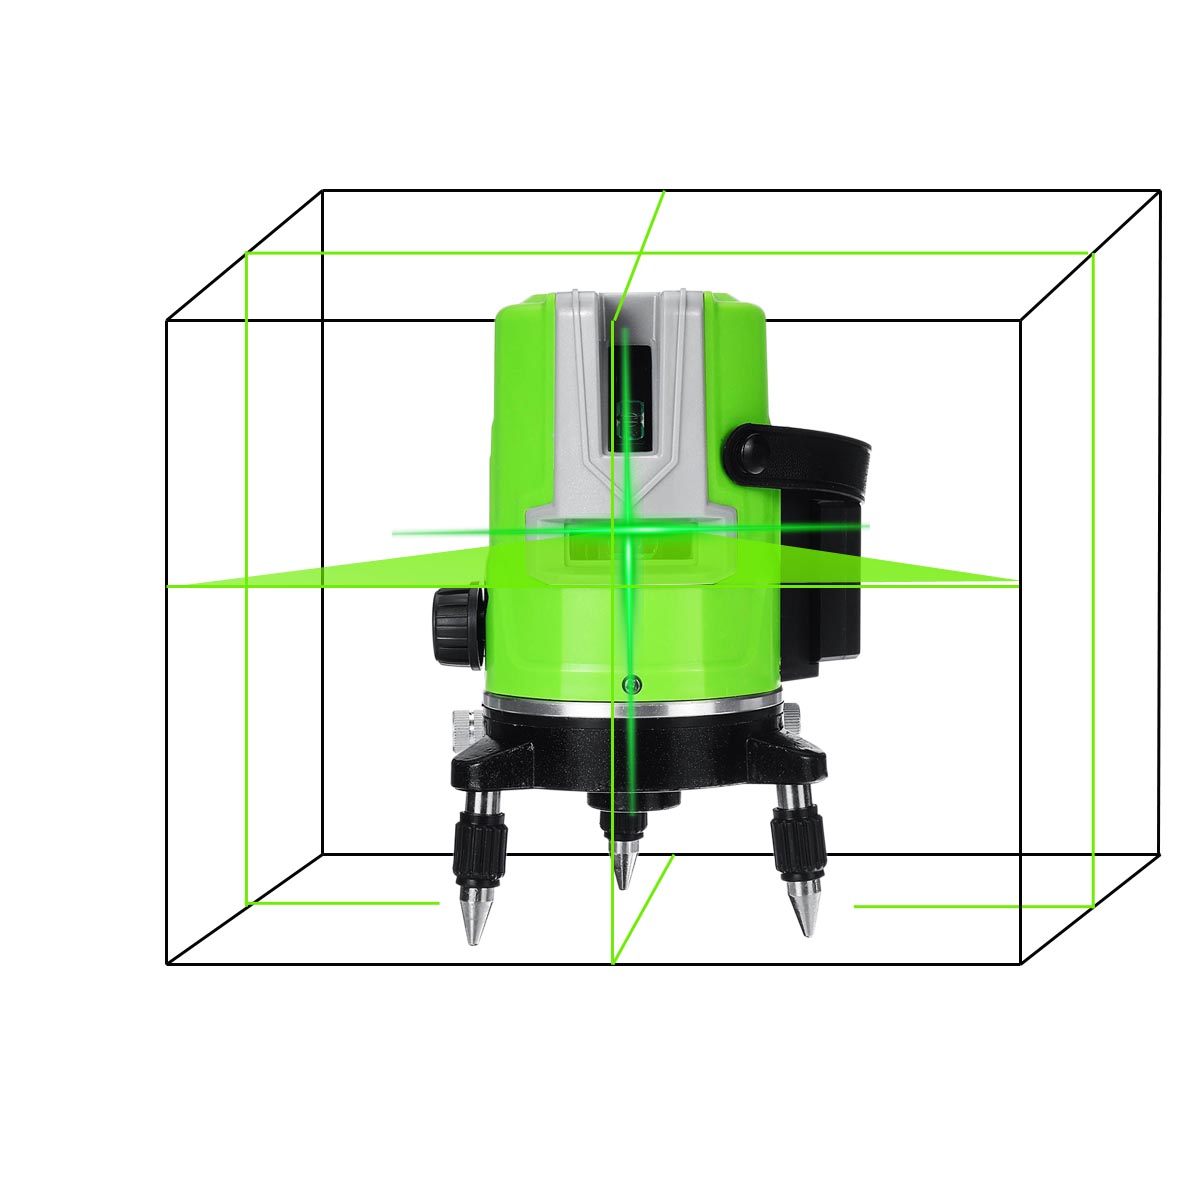 3D-5-Lines-Green-Laser-Level-Self-Leveling-360deg-Rotary-Cross-Measuring-Tool-1707097-5